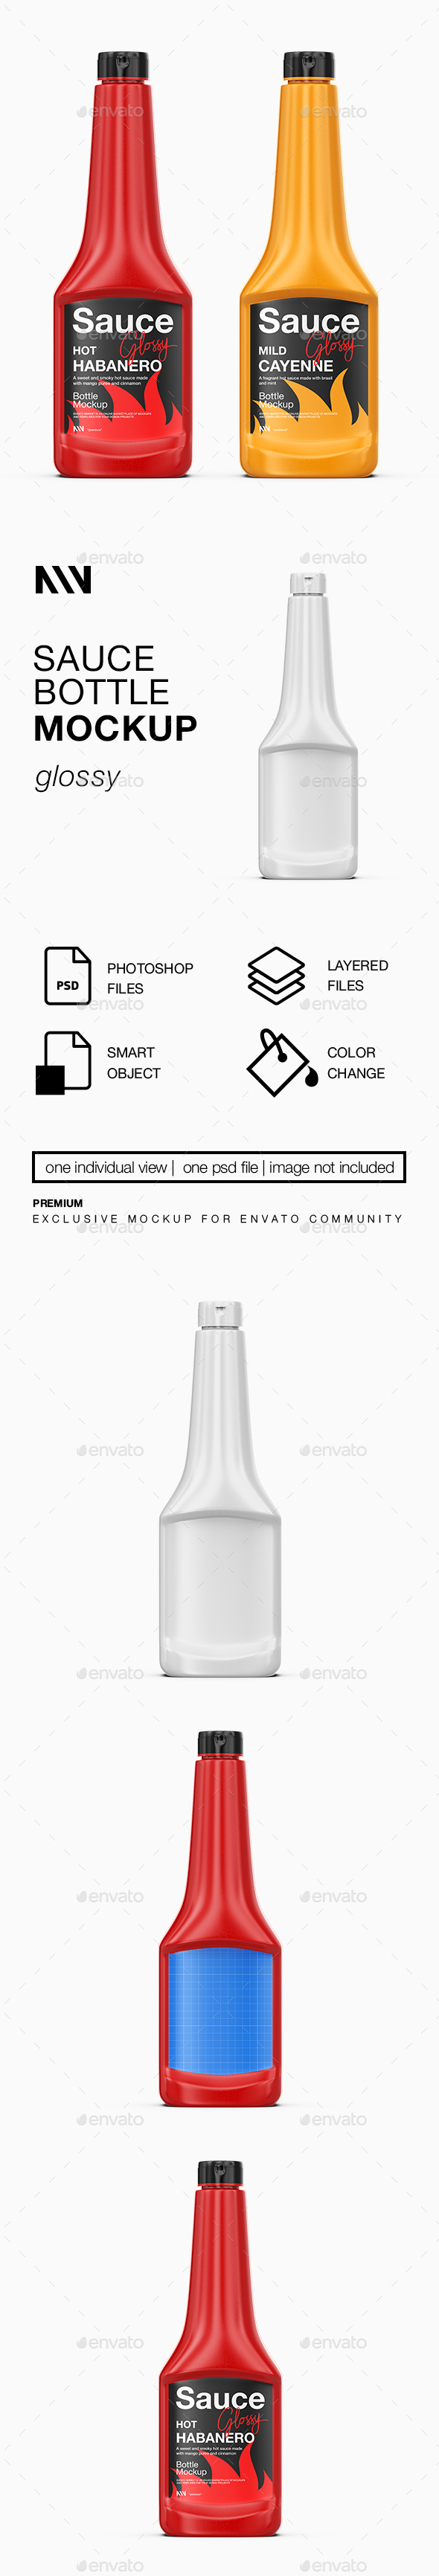 [DOWNLOAD]Sauce Bottle Mockup